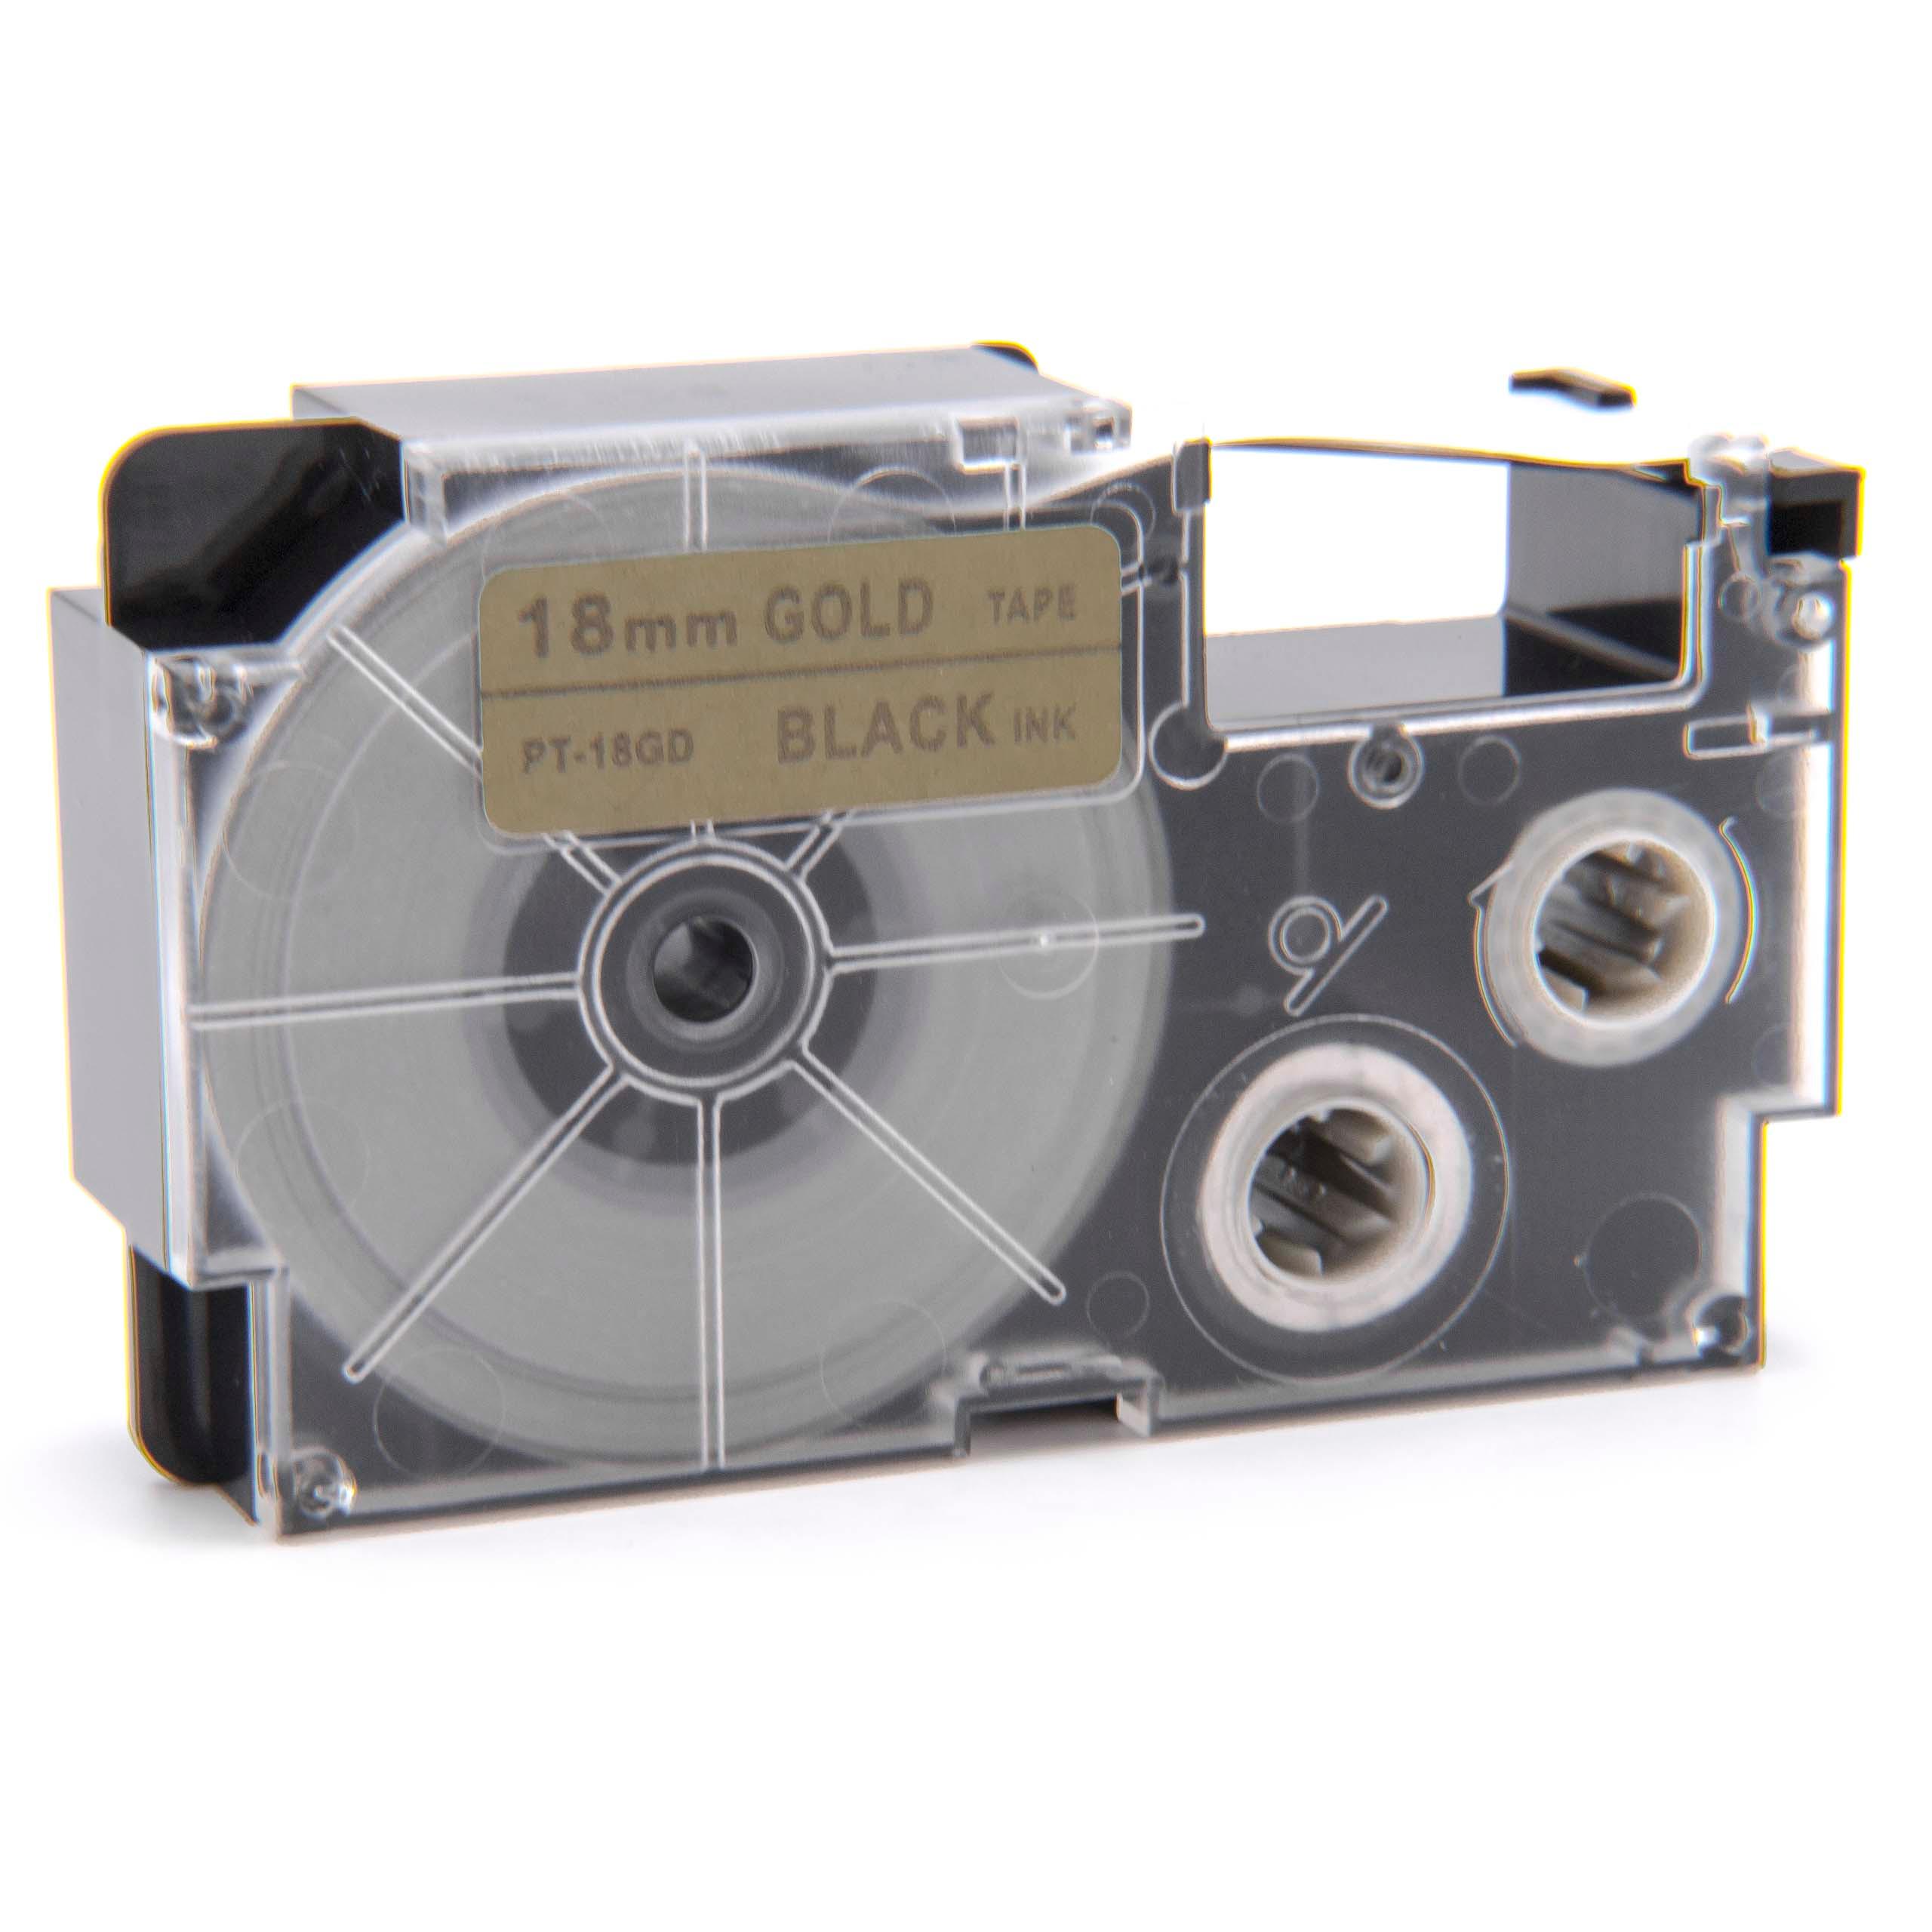 Cassette à ruban remplace Casio XR-18GD, XR-18GD1 - 18mm lettrage Noir ruban Or, pet+ RESIN